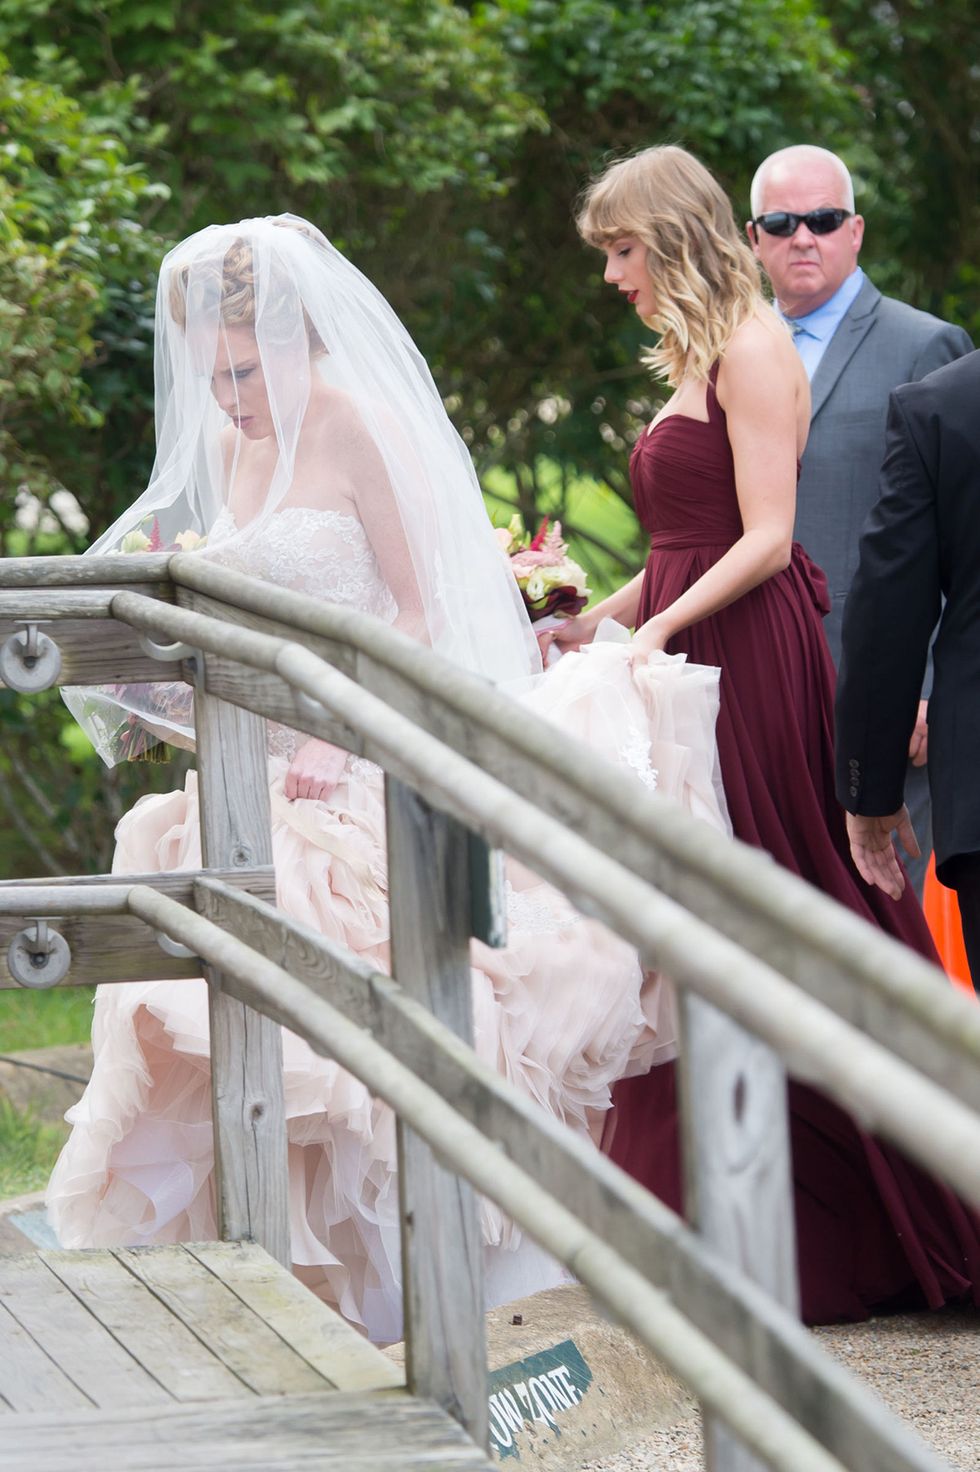 Photograph, Veil, Wedding dress, Bride, Dress, Ceremony, Wedding, Bridal clothing, Bridal veil, Bridal accessory, 